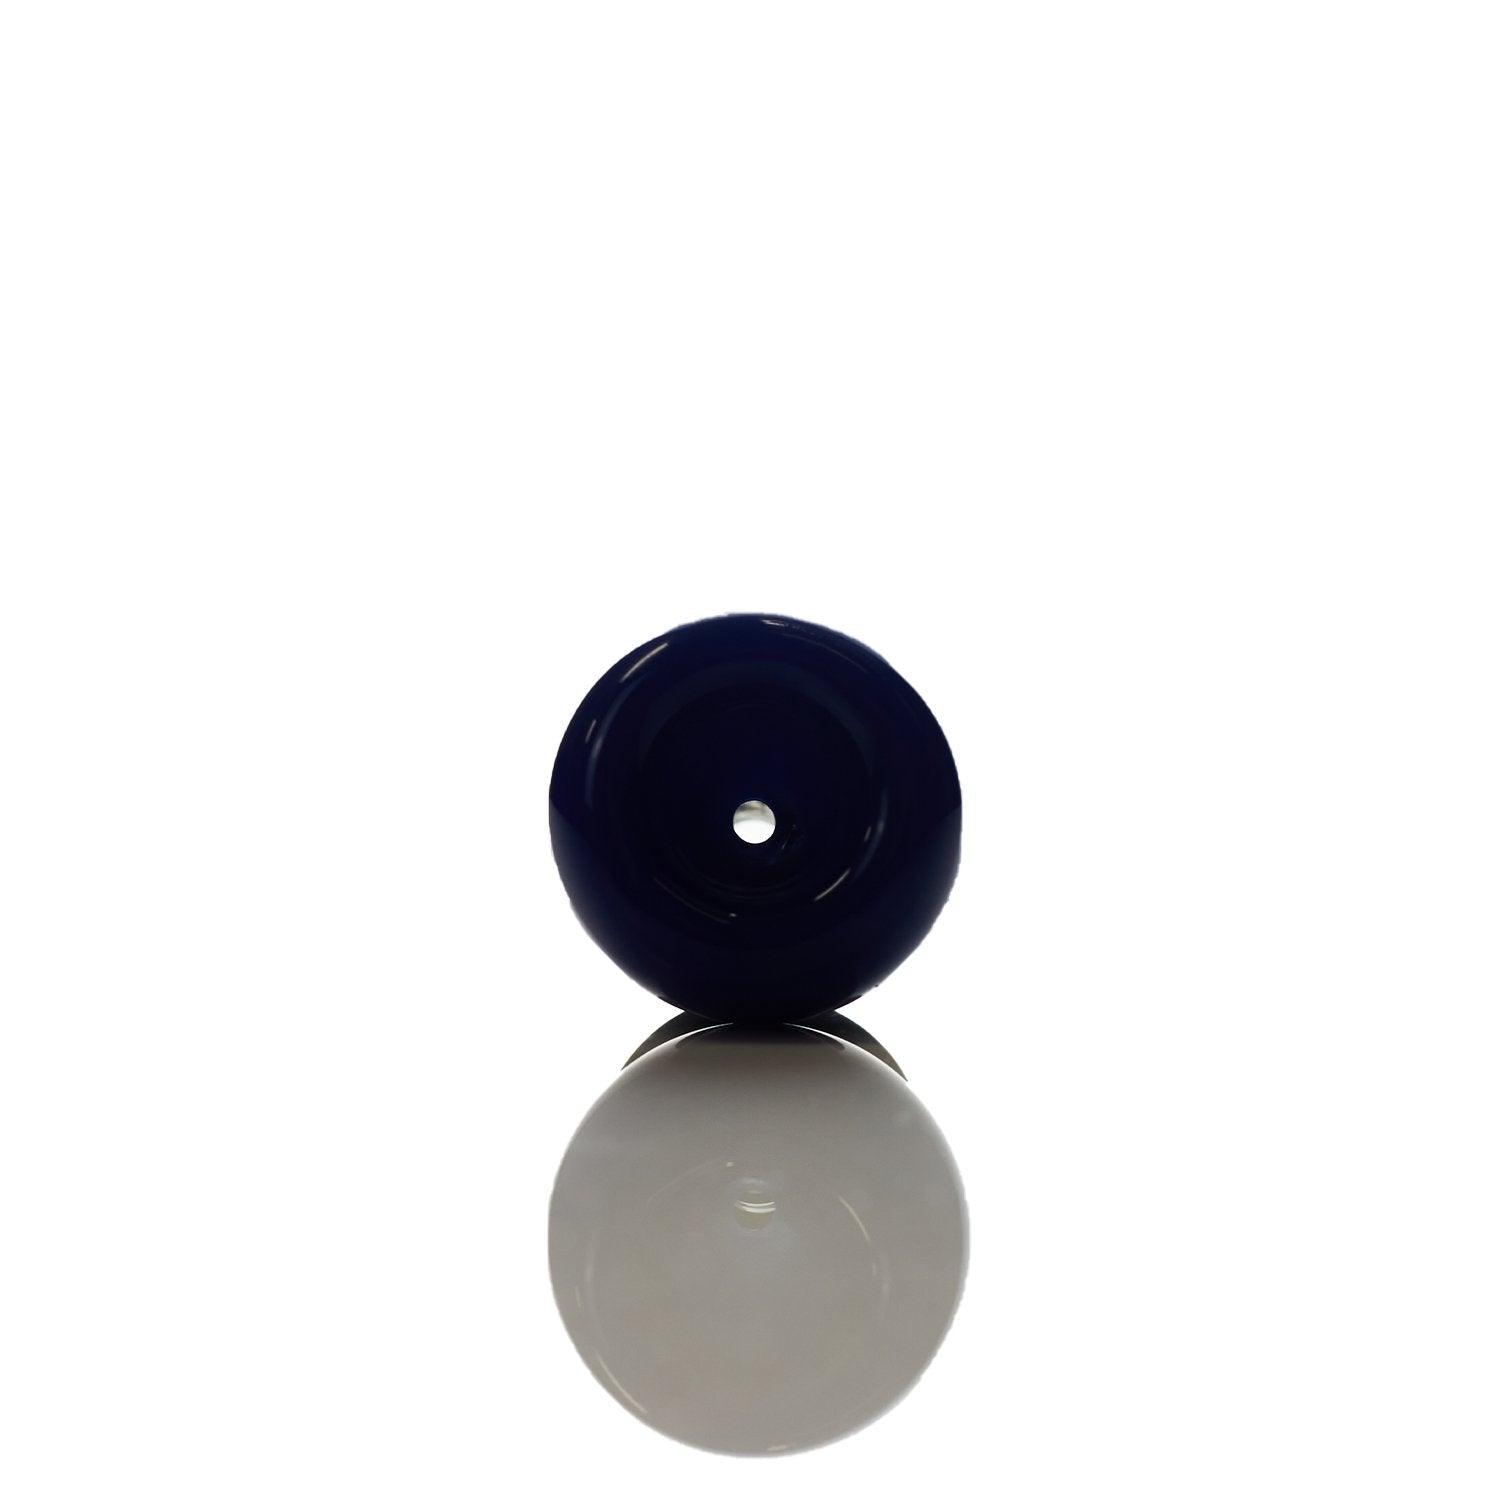 Joe Madigan Periwinkle Round Bowl Black Fitting 14 mm - Smoke Spot Smoke Shop